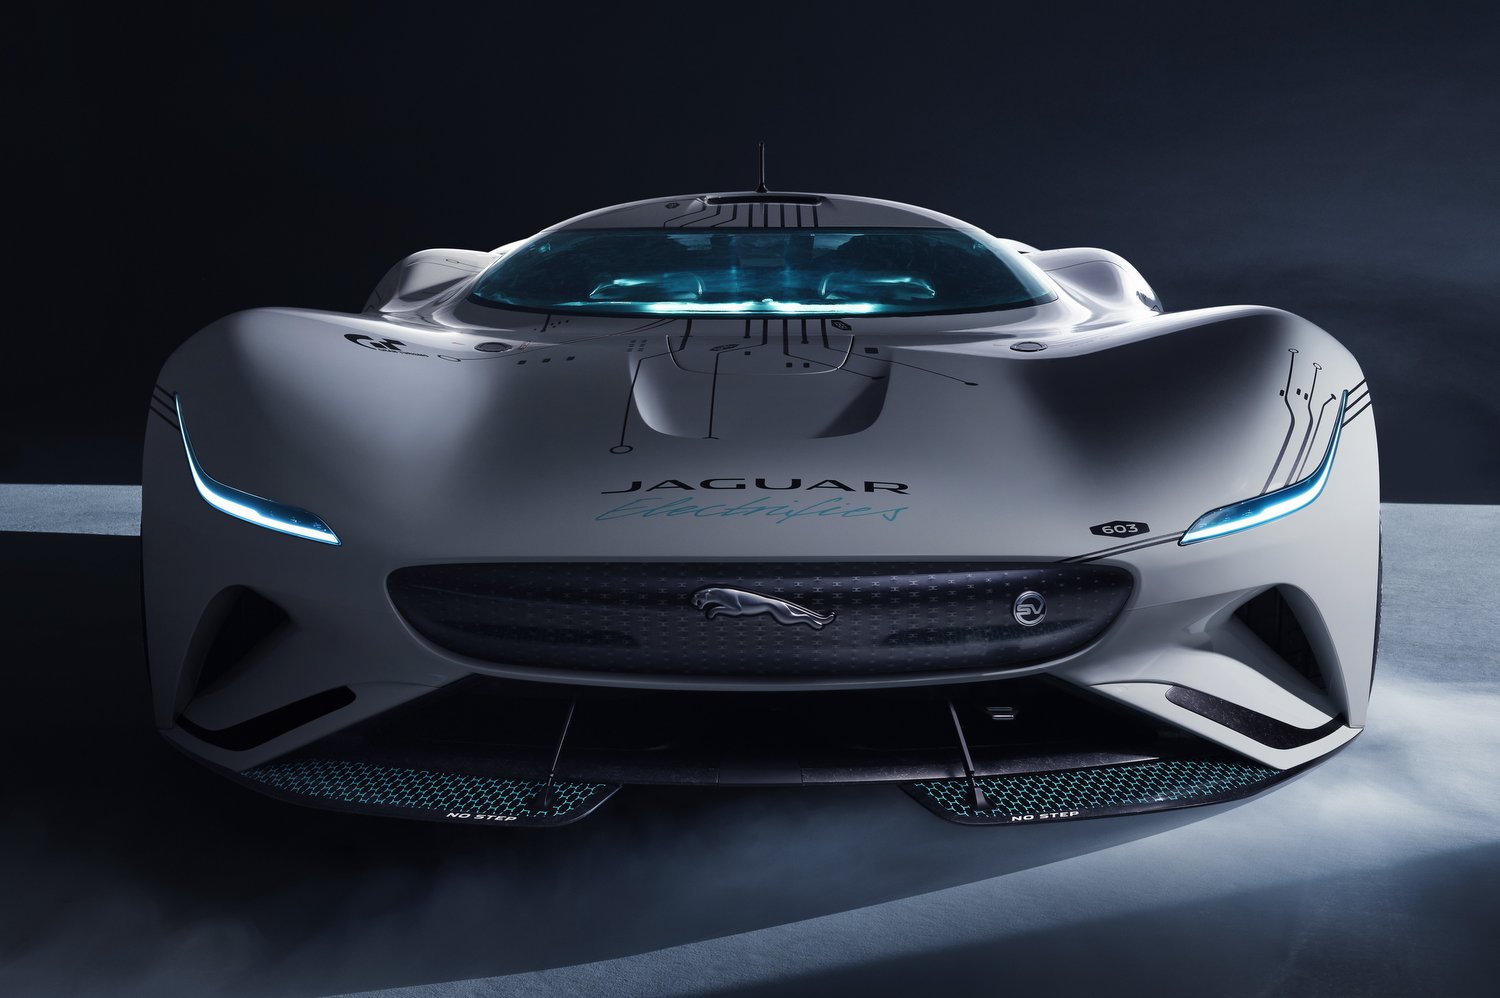 Elképesztő virtuális versenyautót épített a Jaguar 11